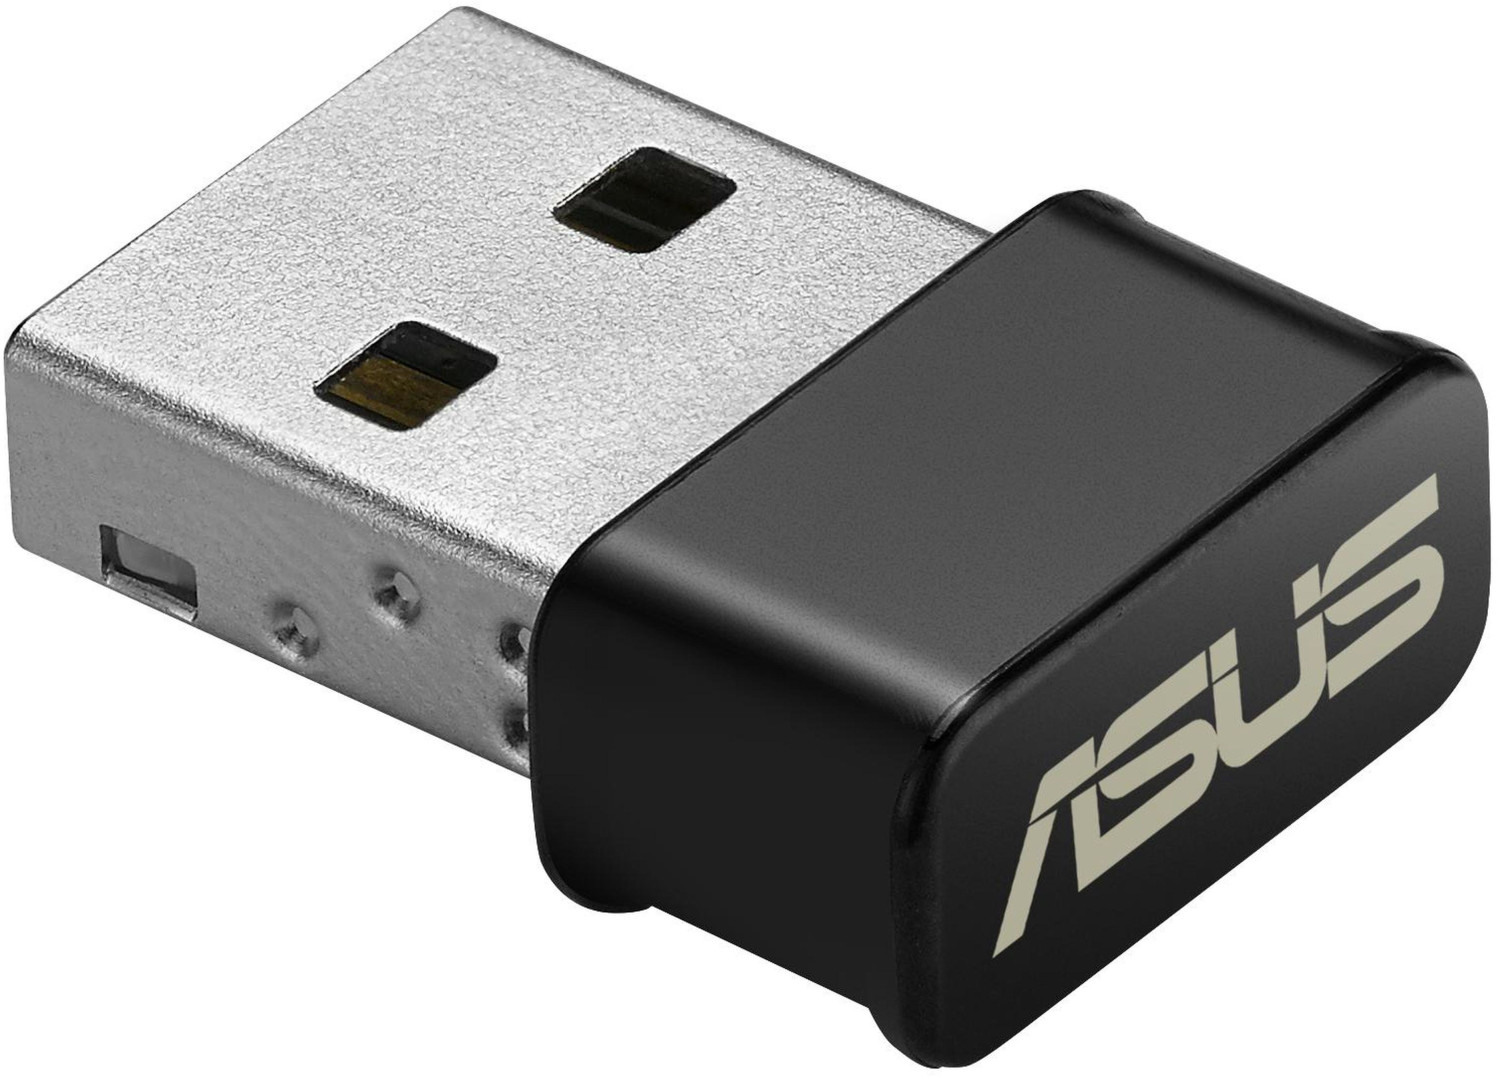 Asus USB-AC53 AC1300